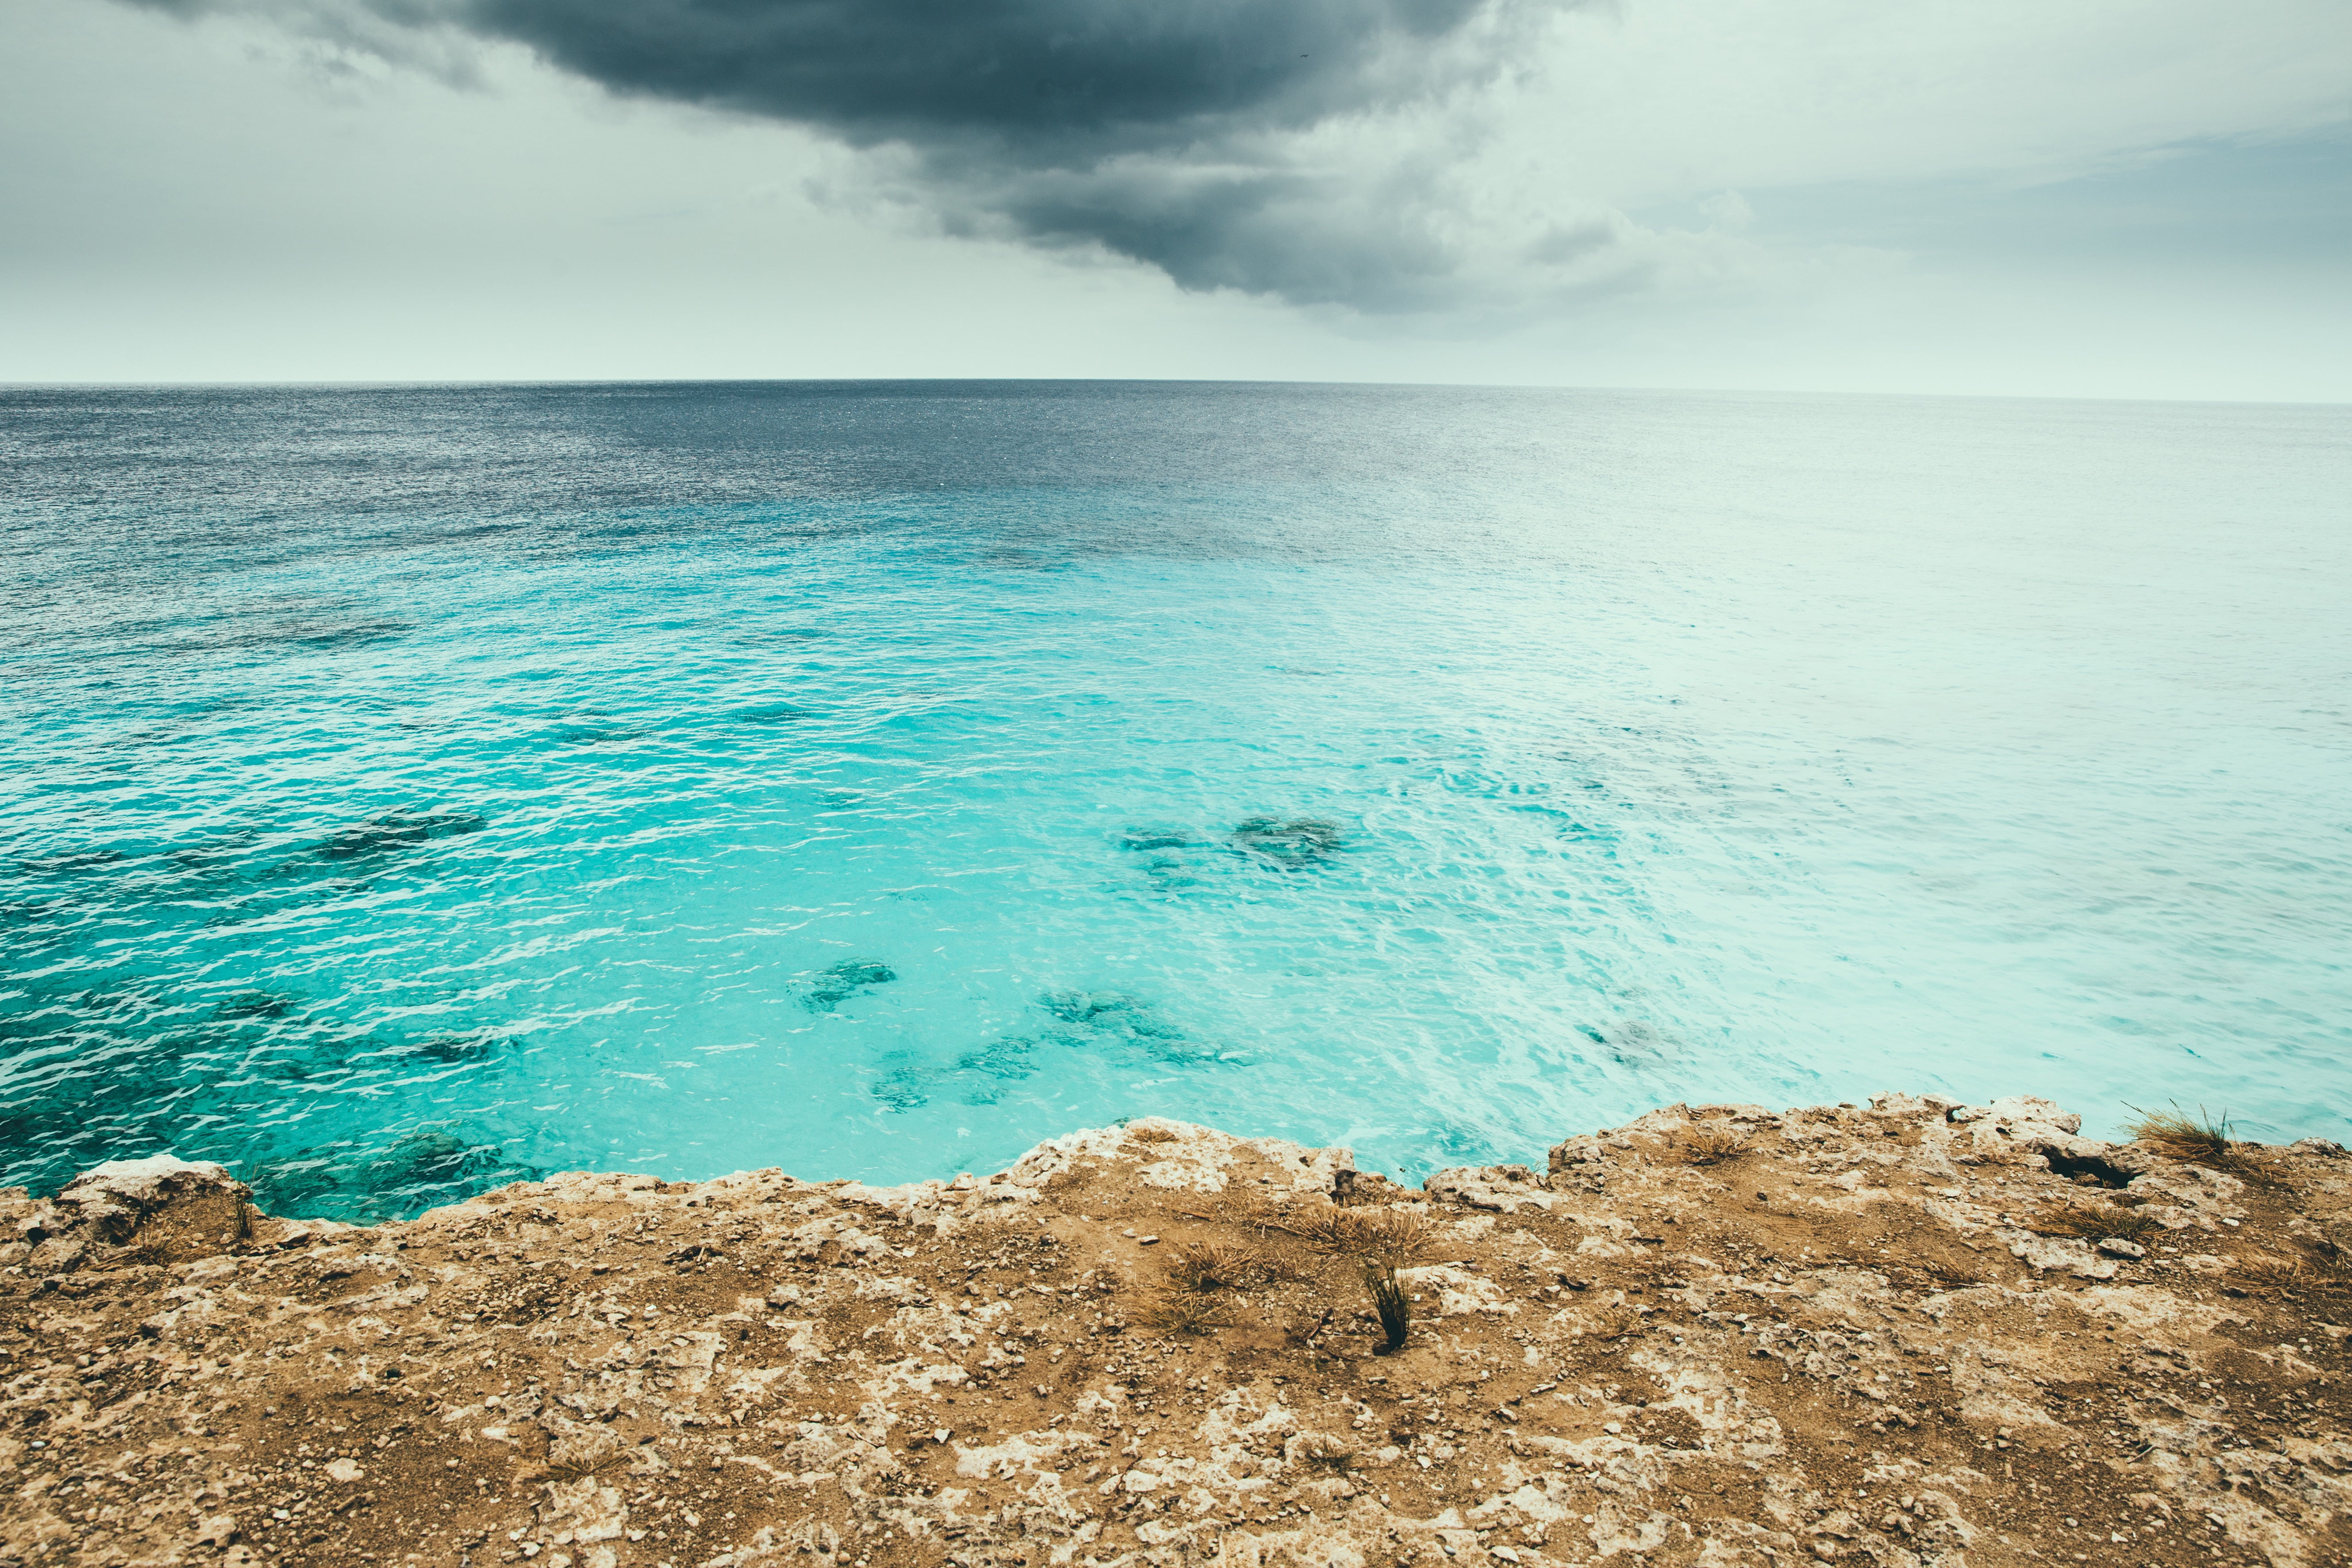 Coast water. Бирюзовый океан. Бирюзовое море. Море бирюзового цвета. Моря и океаны.